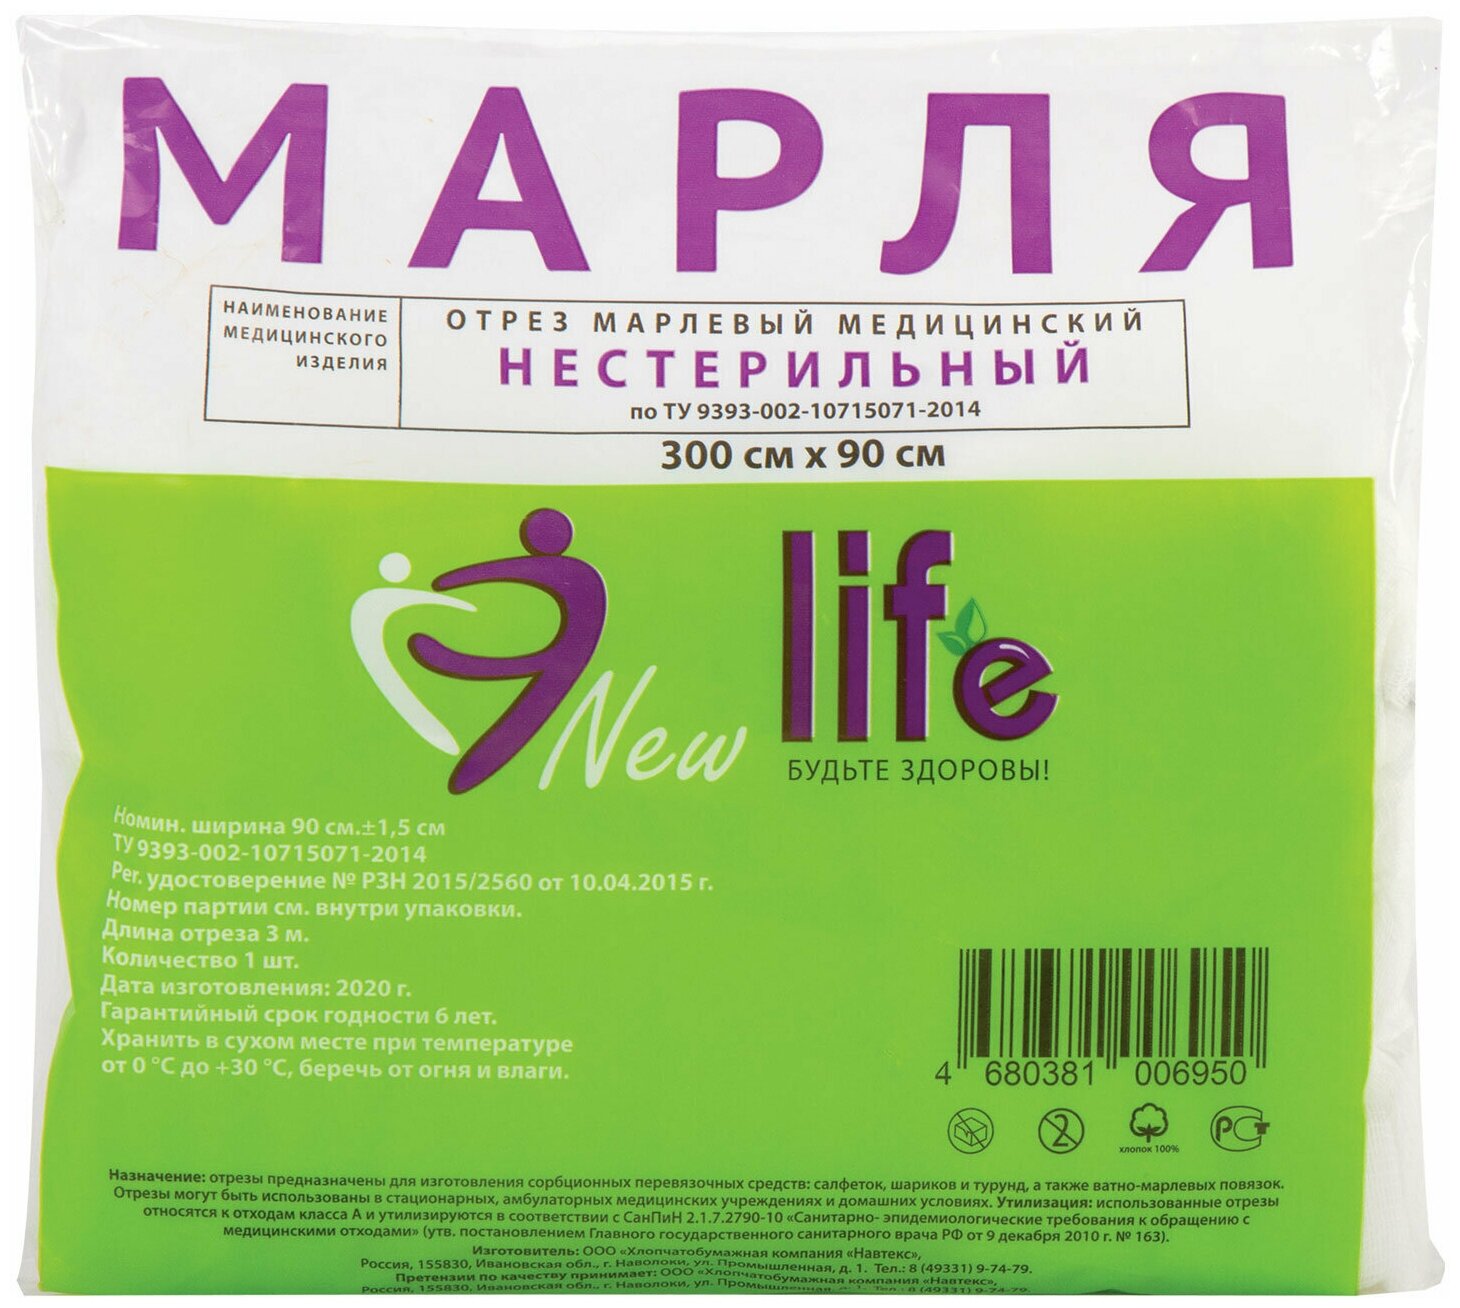 NEW LIFE Марля медицинская отбеленная new life отрез 3 м плотность 36 (±2) г/м2 94262 8 шт.